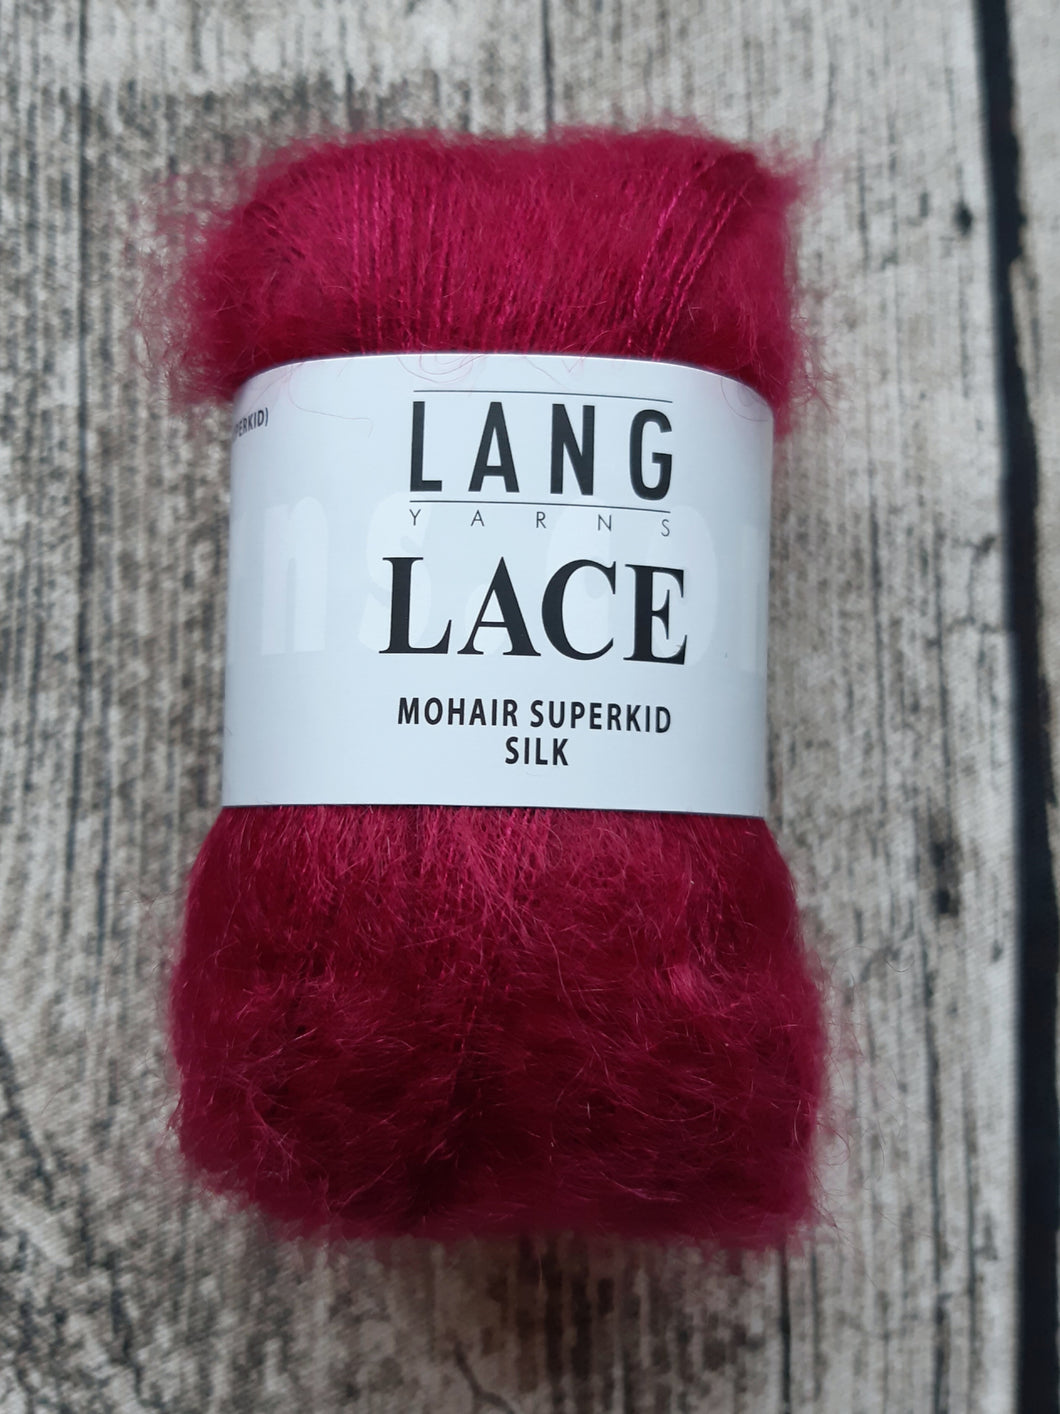 Lace, Mohair superkid silk, 25g